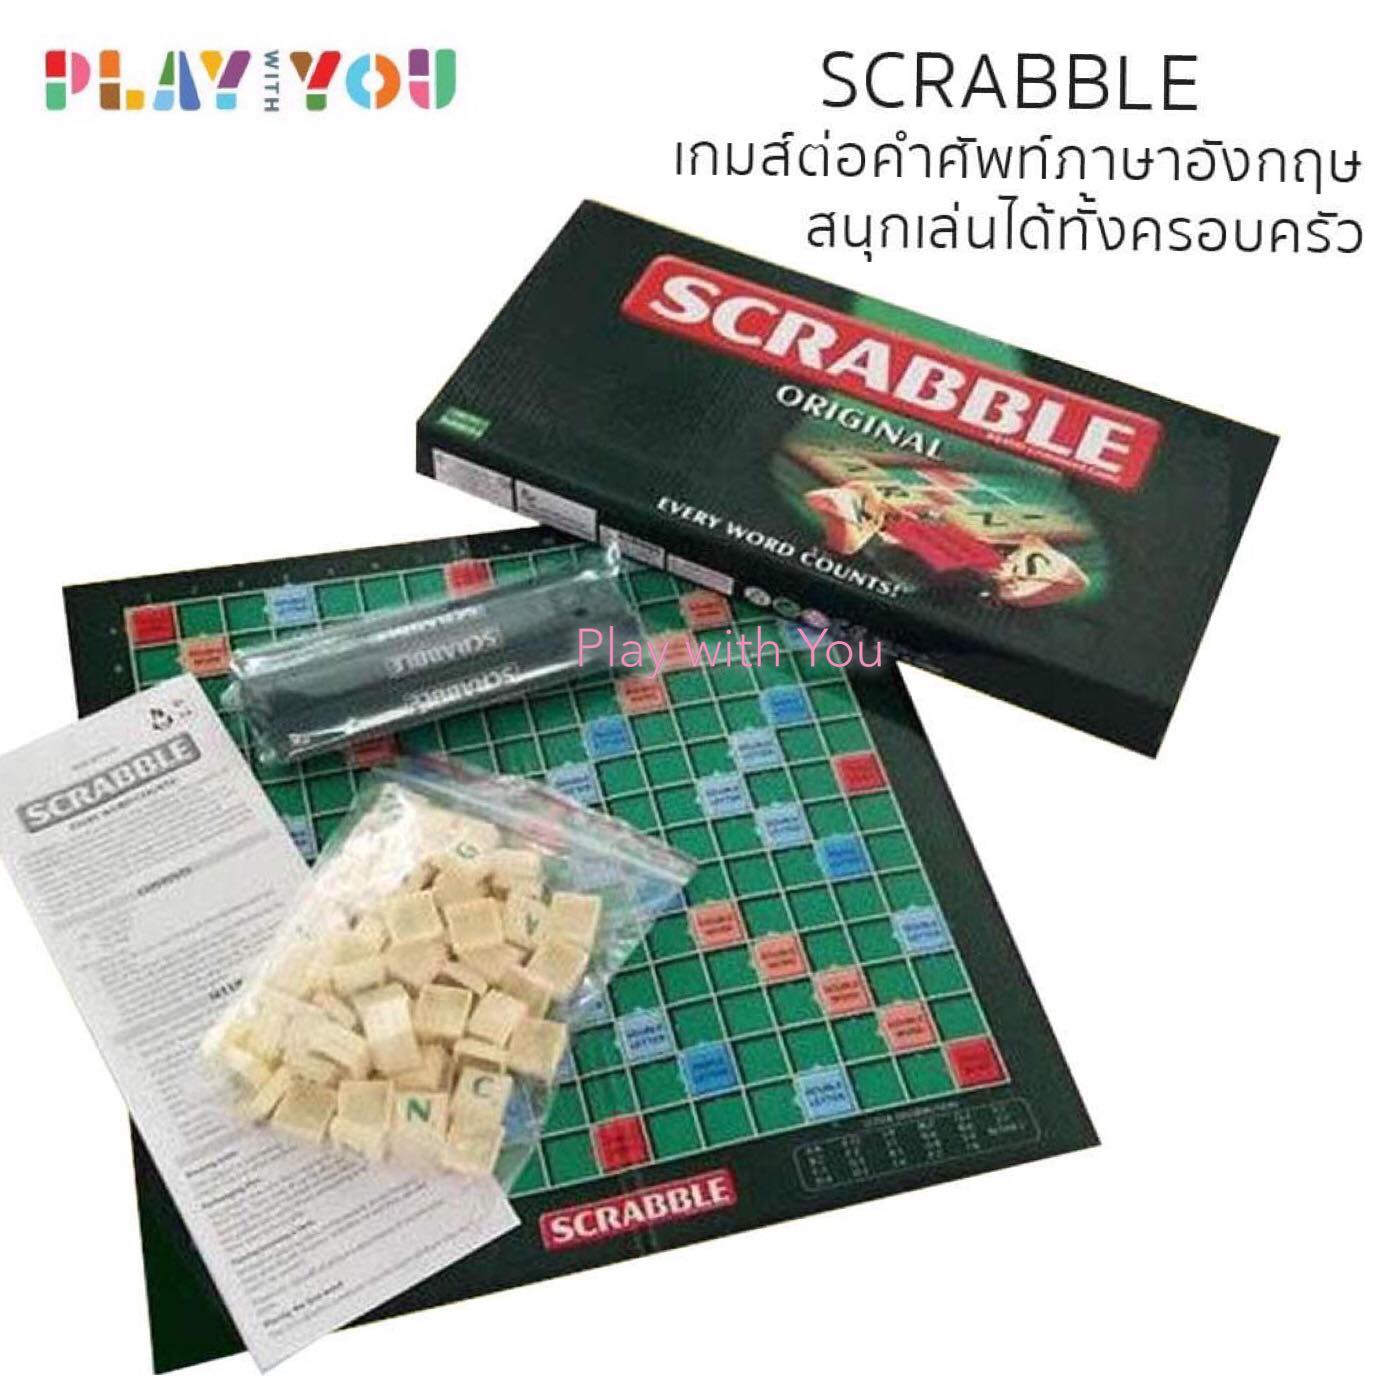 Play with You Scrabble สแครบเบิ้ล เกมส์ต่อคำศัพท์ภาษาอังกฤษ (ไซส์เล็ก) เหมาะสำหรับวัย 6 ขวบขึ้นไป